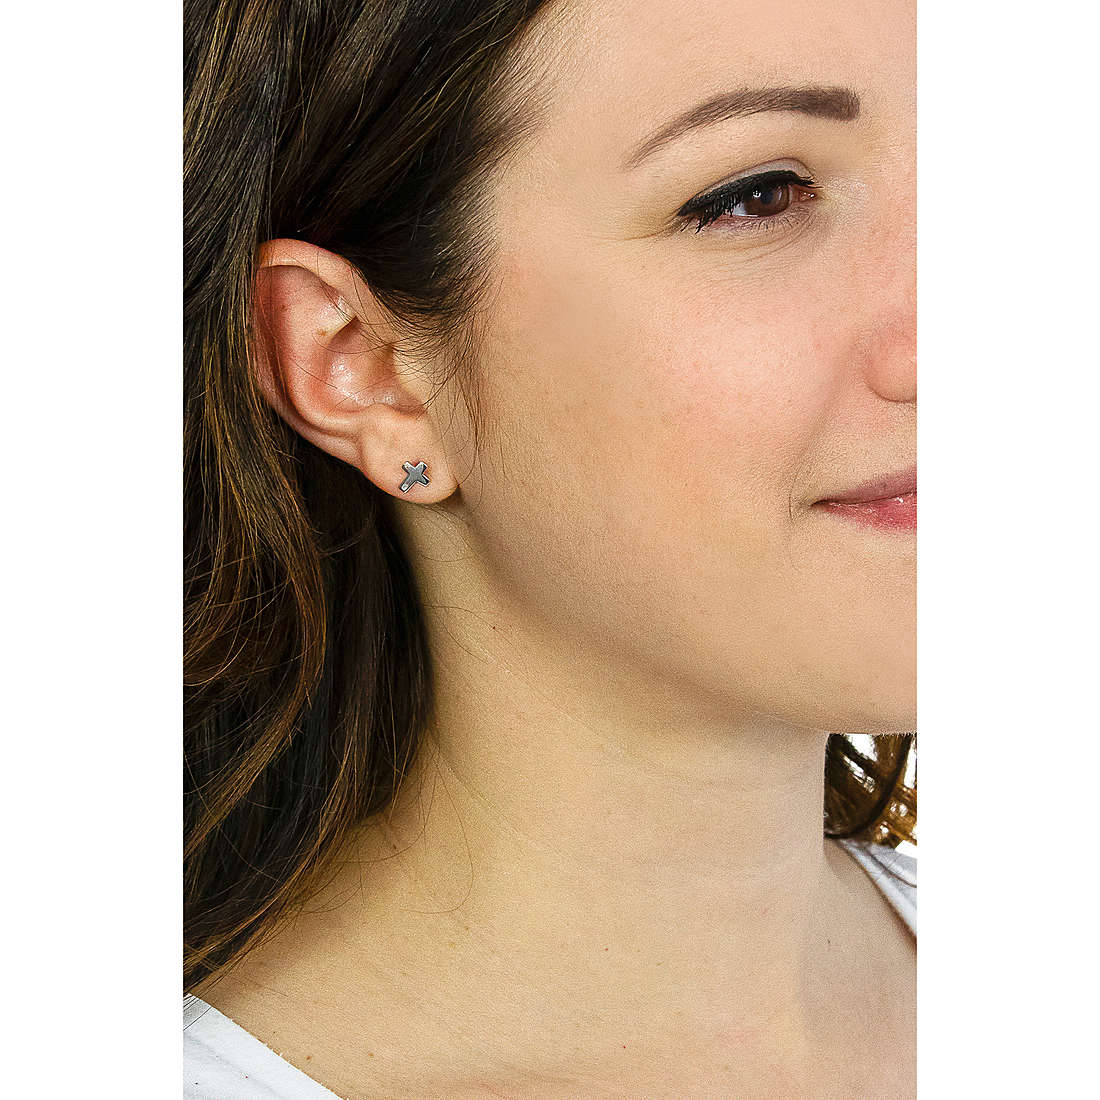 Amen earrings woman ORCROB wearing